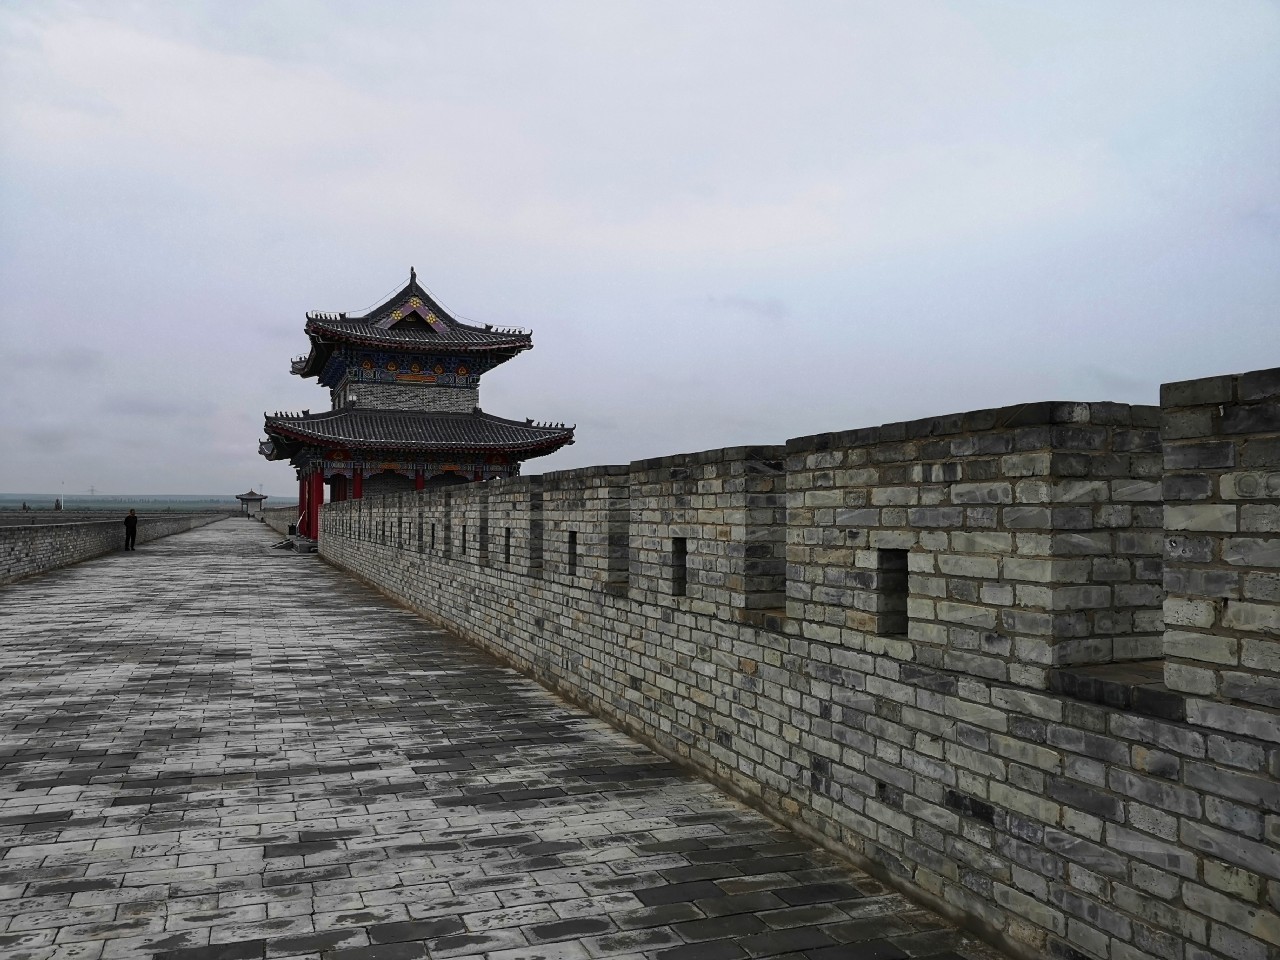 文安县古城墙遭破坏 当地文广旅局辩称不负监管责任被驳回